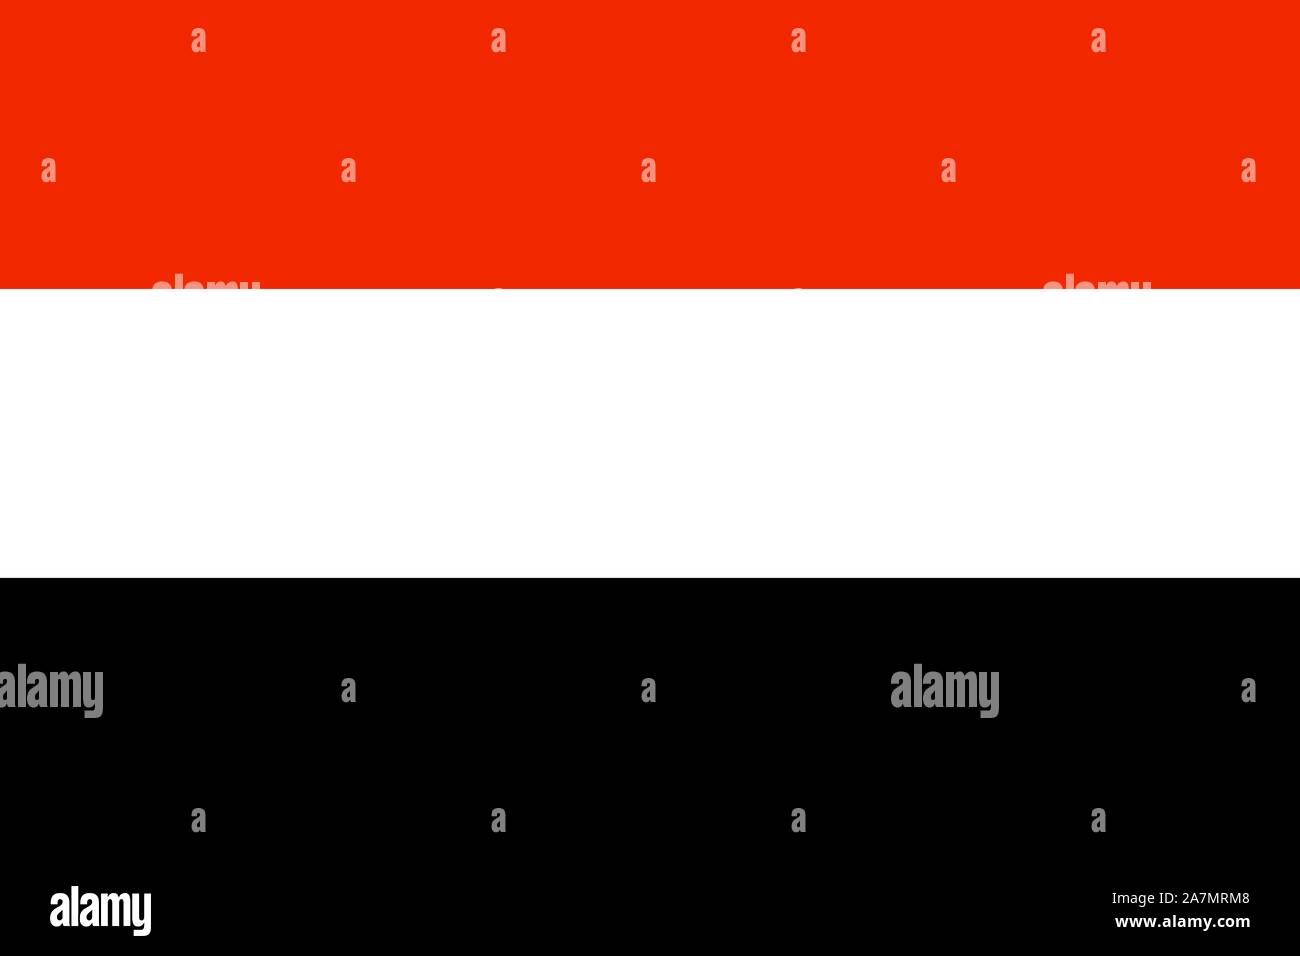 Jemen Nationalflagge Vector Illustration. Naher Osten Land. Stock Vektor